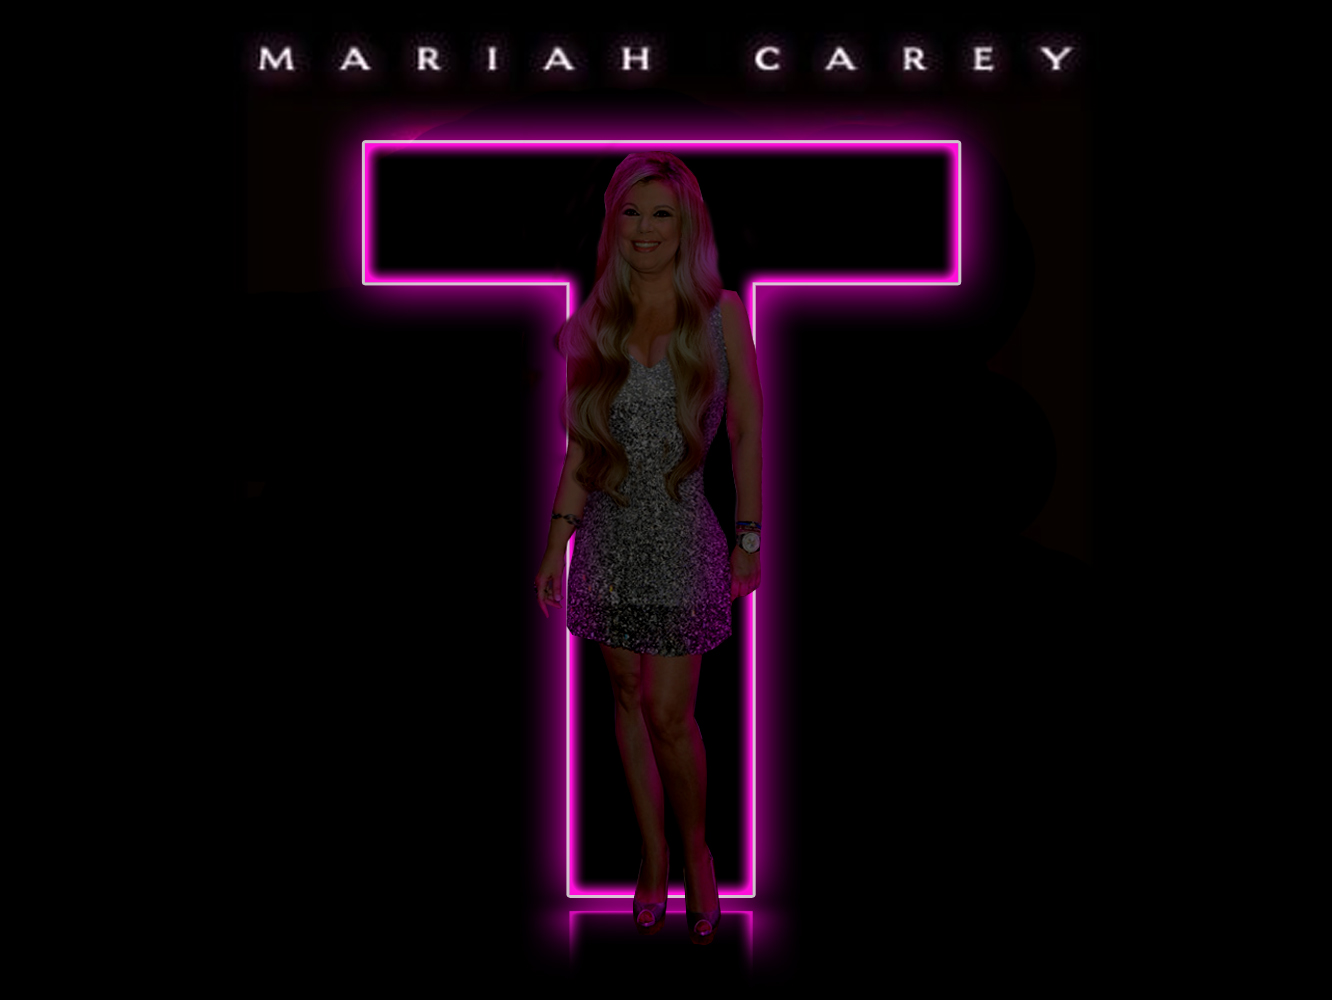  Mariah Carey vuelve a salir de gira y pasará por ‘The Voice’ como supercoach